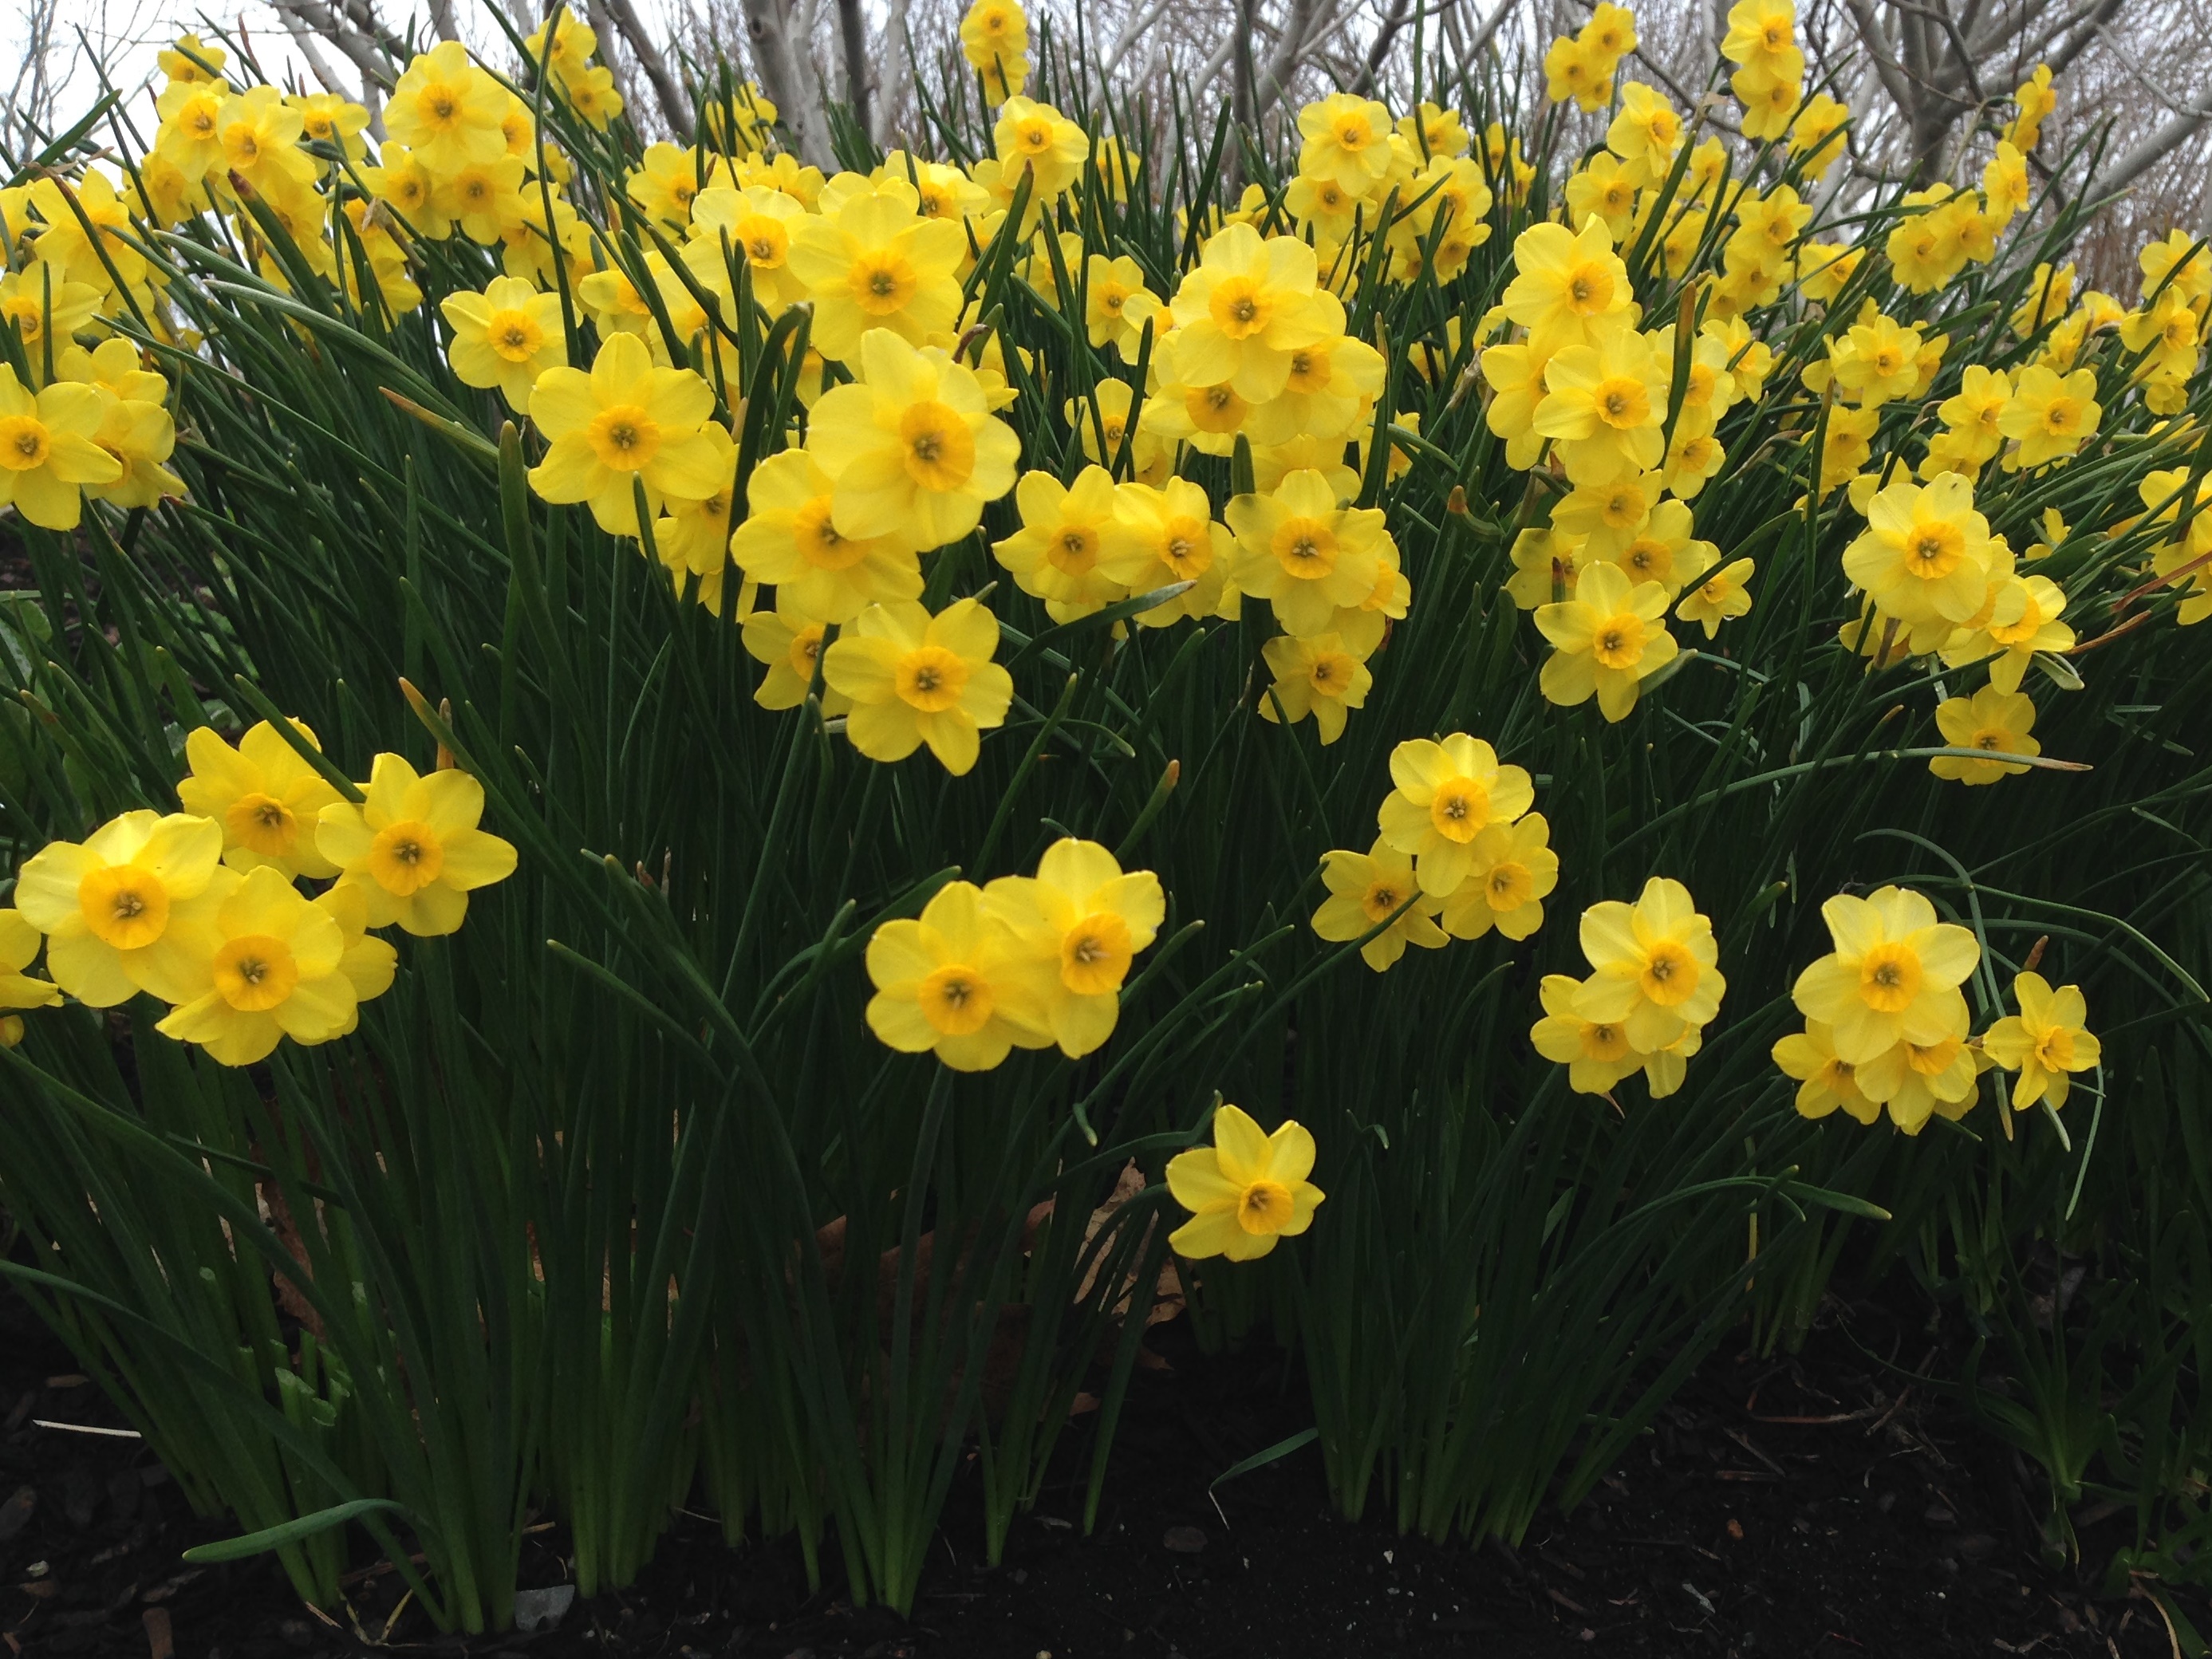 5-5 Narcissus 'Kokopelli' Jonquilla daffodils